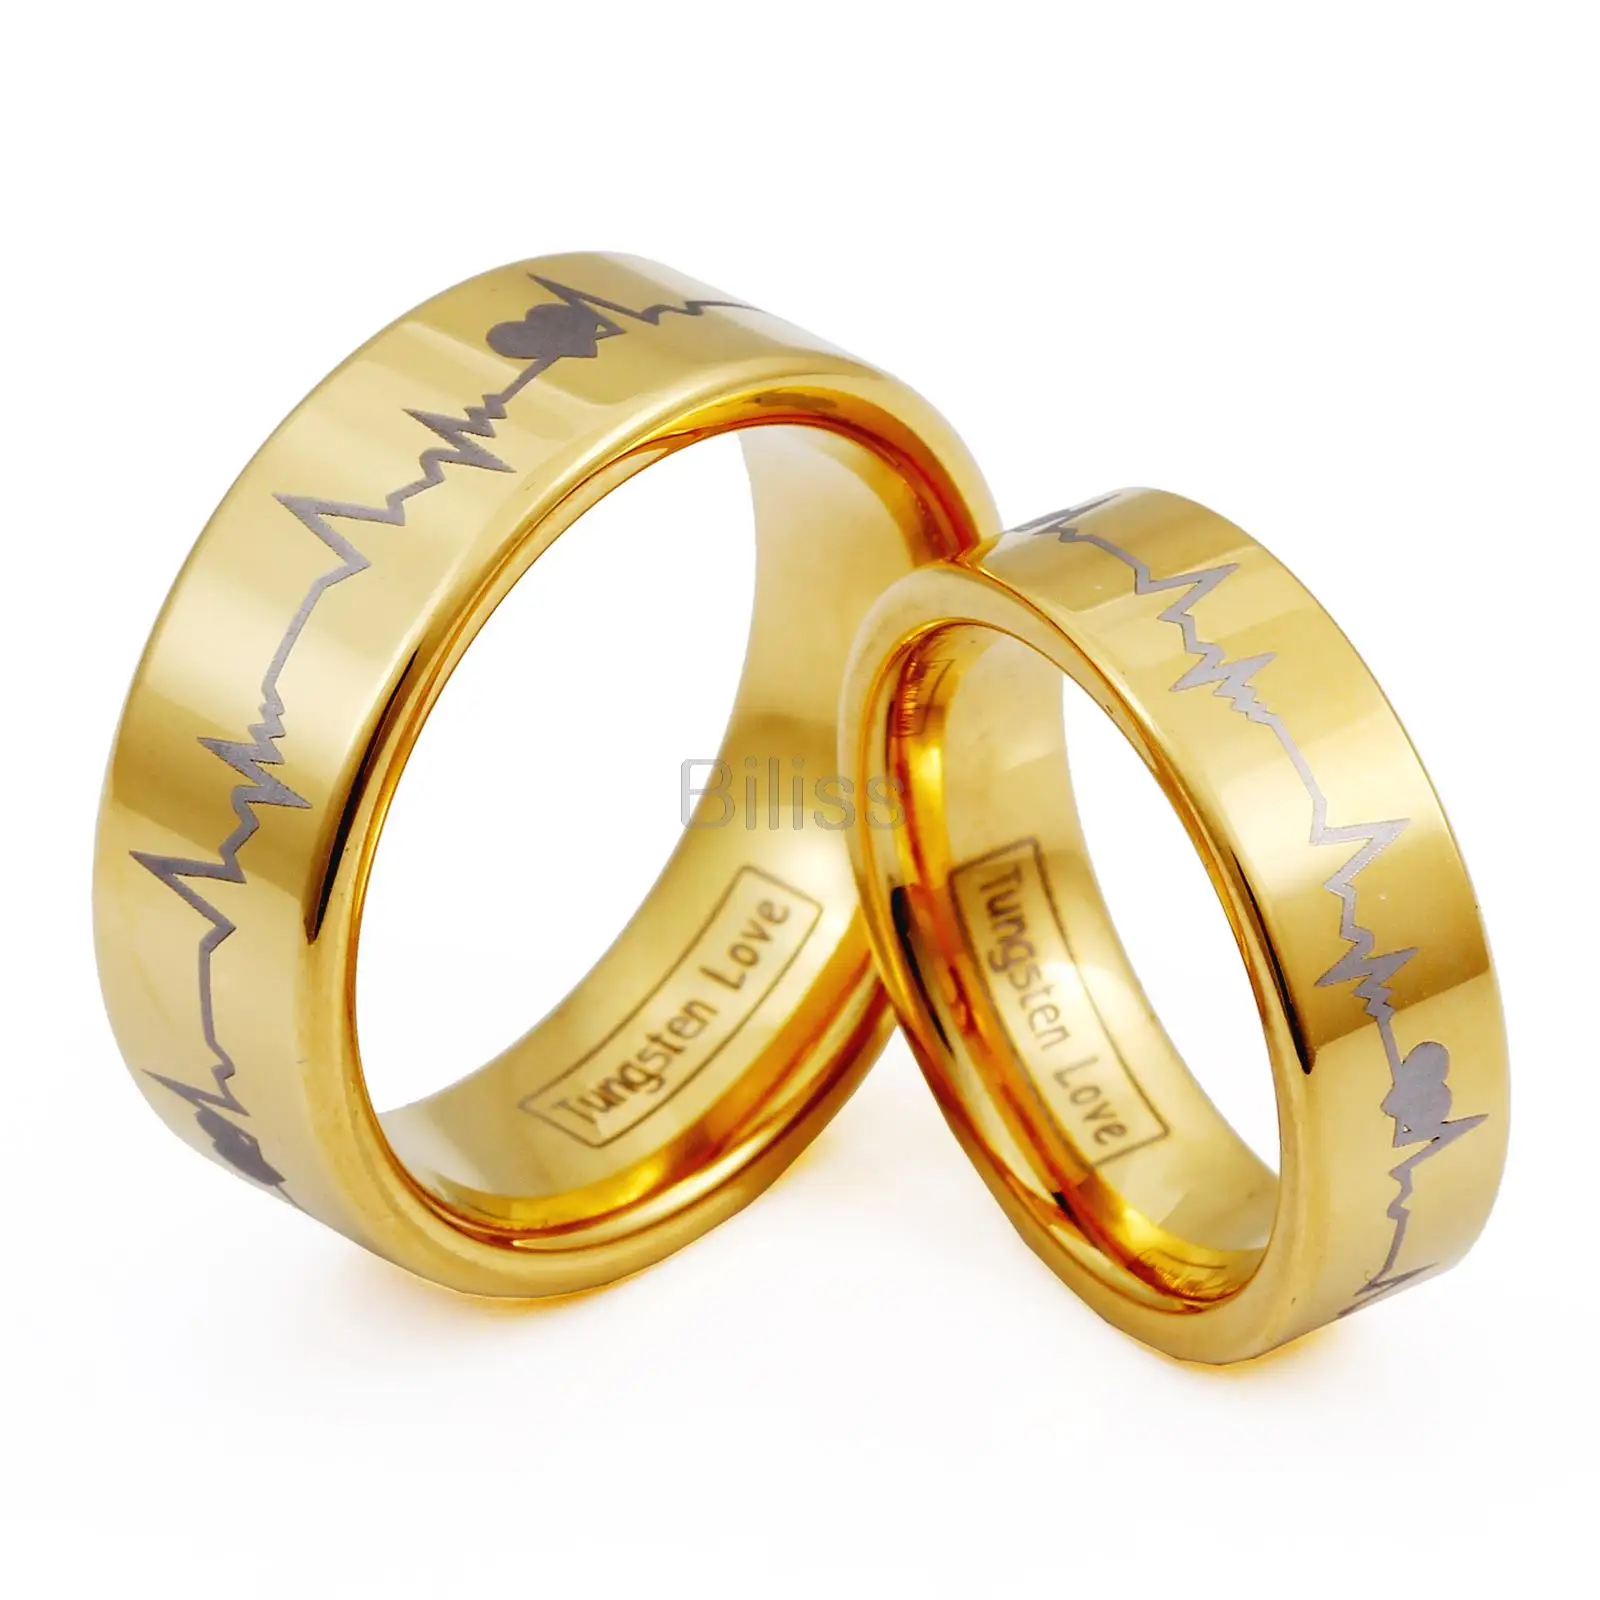 Обручальные кольца золотые на свадьбу. Обручальные кольца парные Санлайн. Кольца обручальные Шепард. Интересные обручальные кольца. Свадебные кольца золотые.